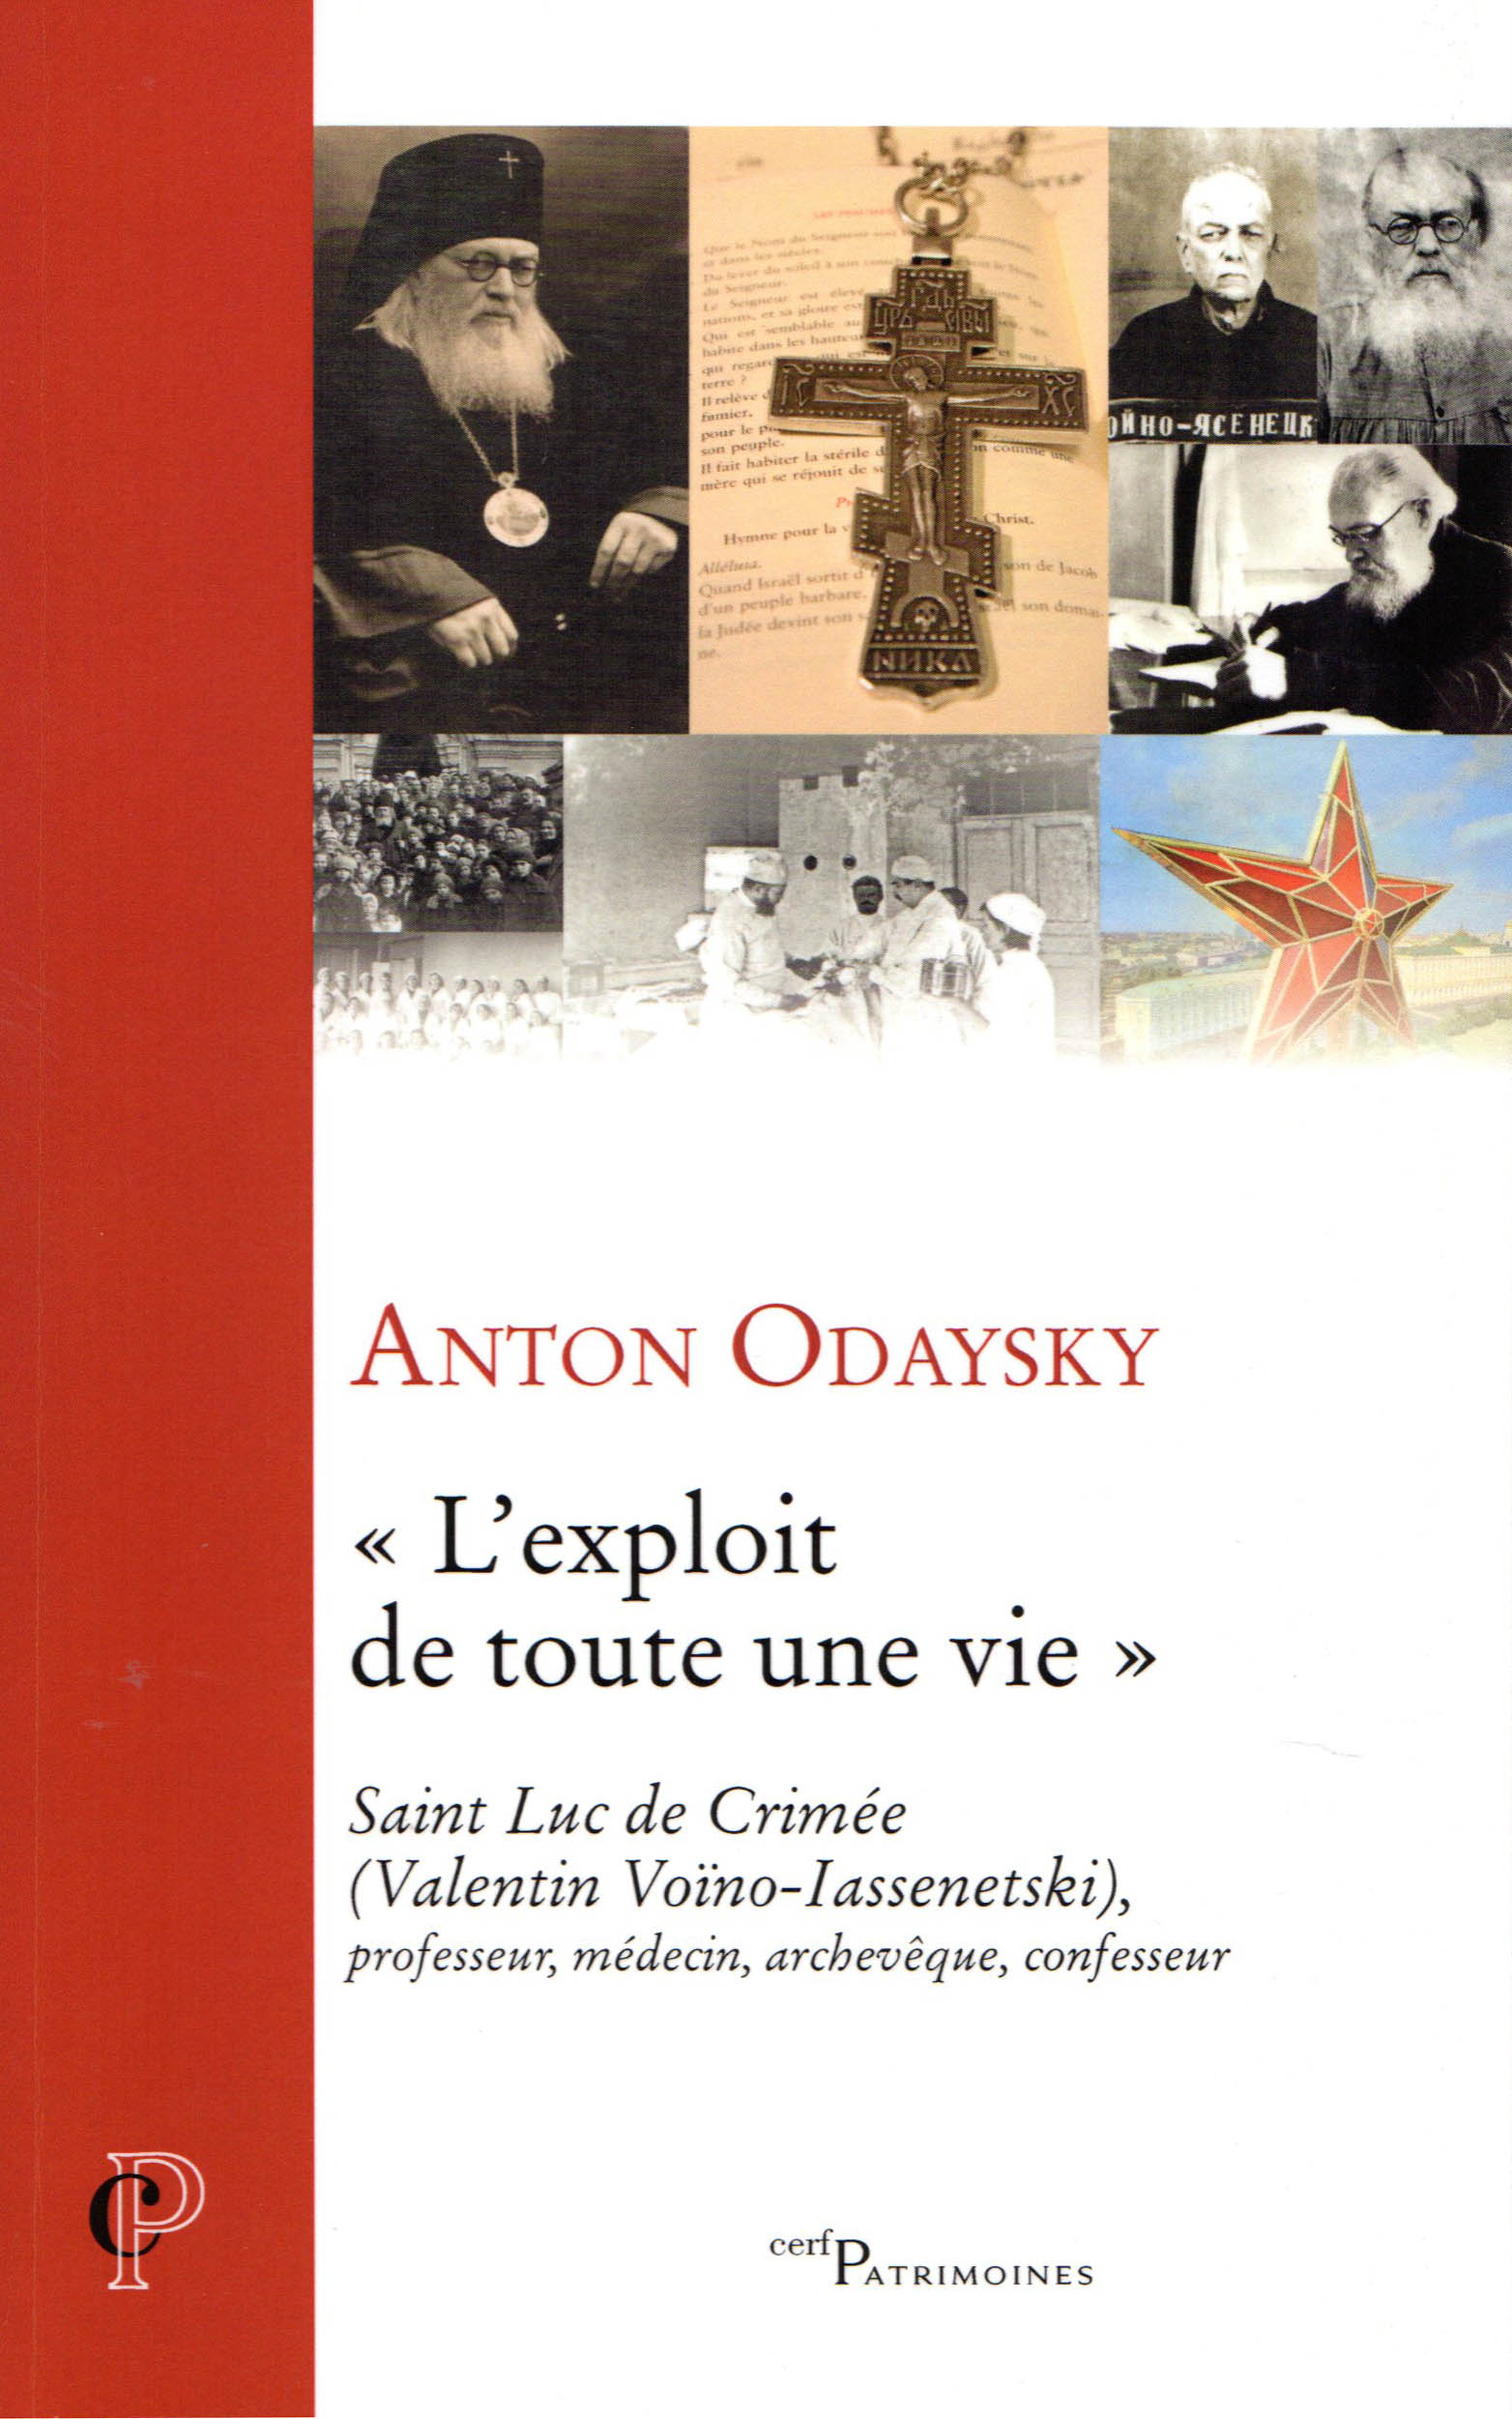 Review: Anton Odaysky, “The feat of a lifetime”. Saint Luke of Crimea